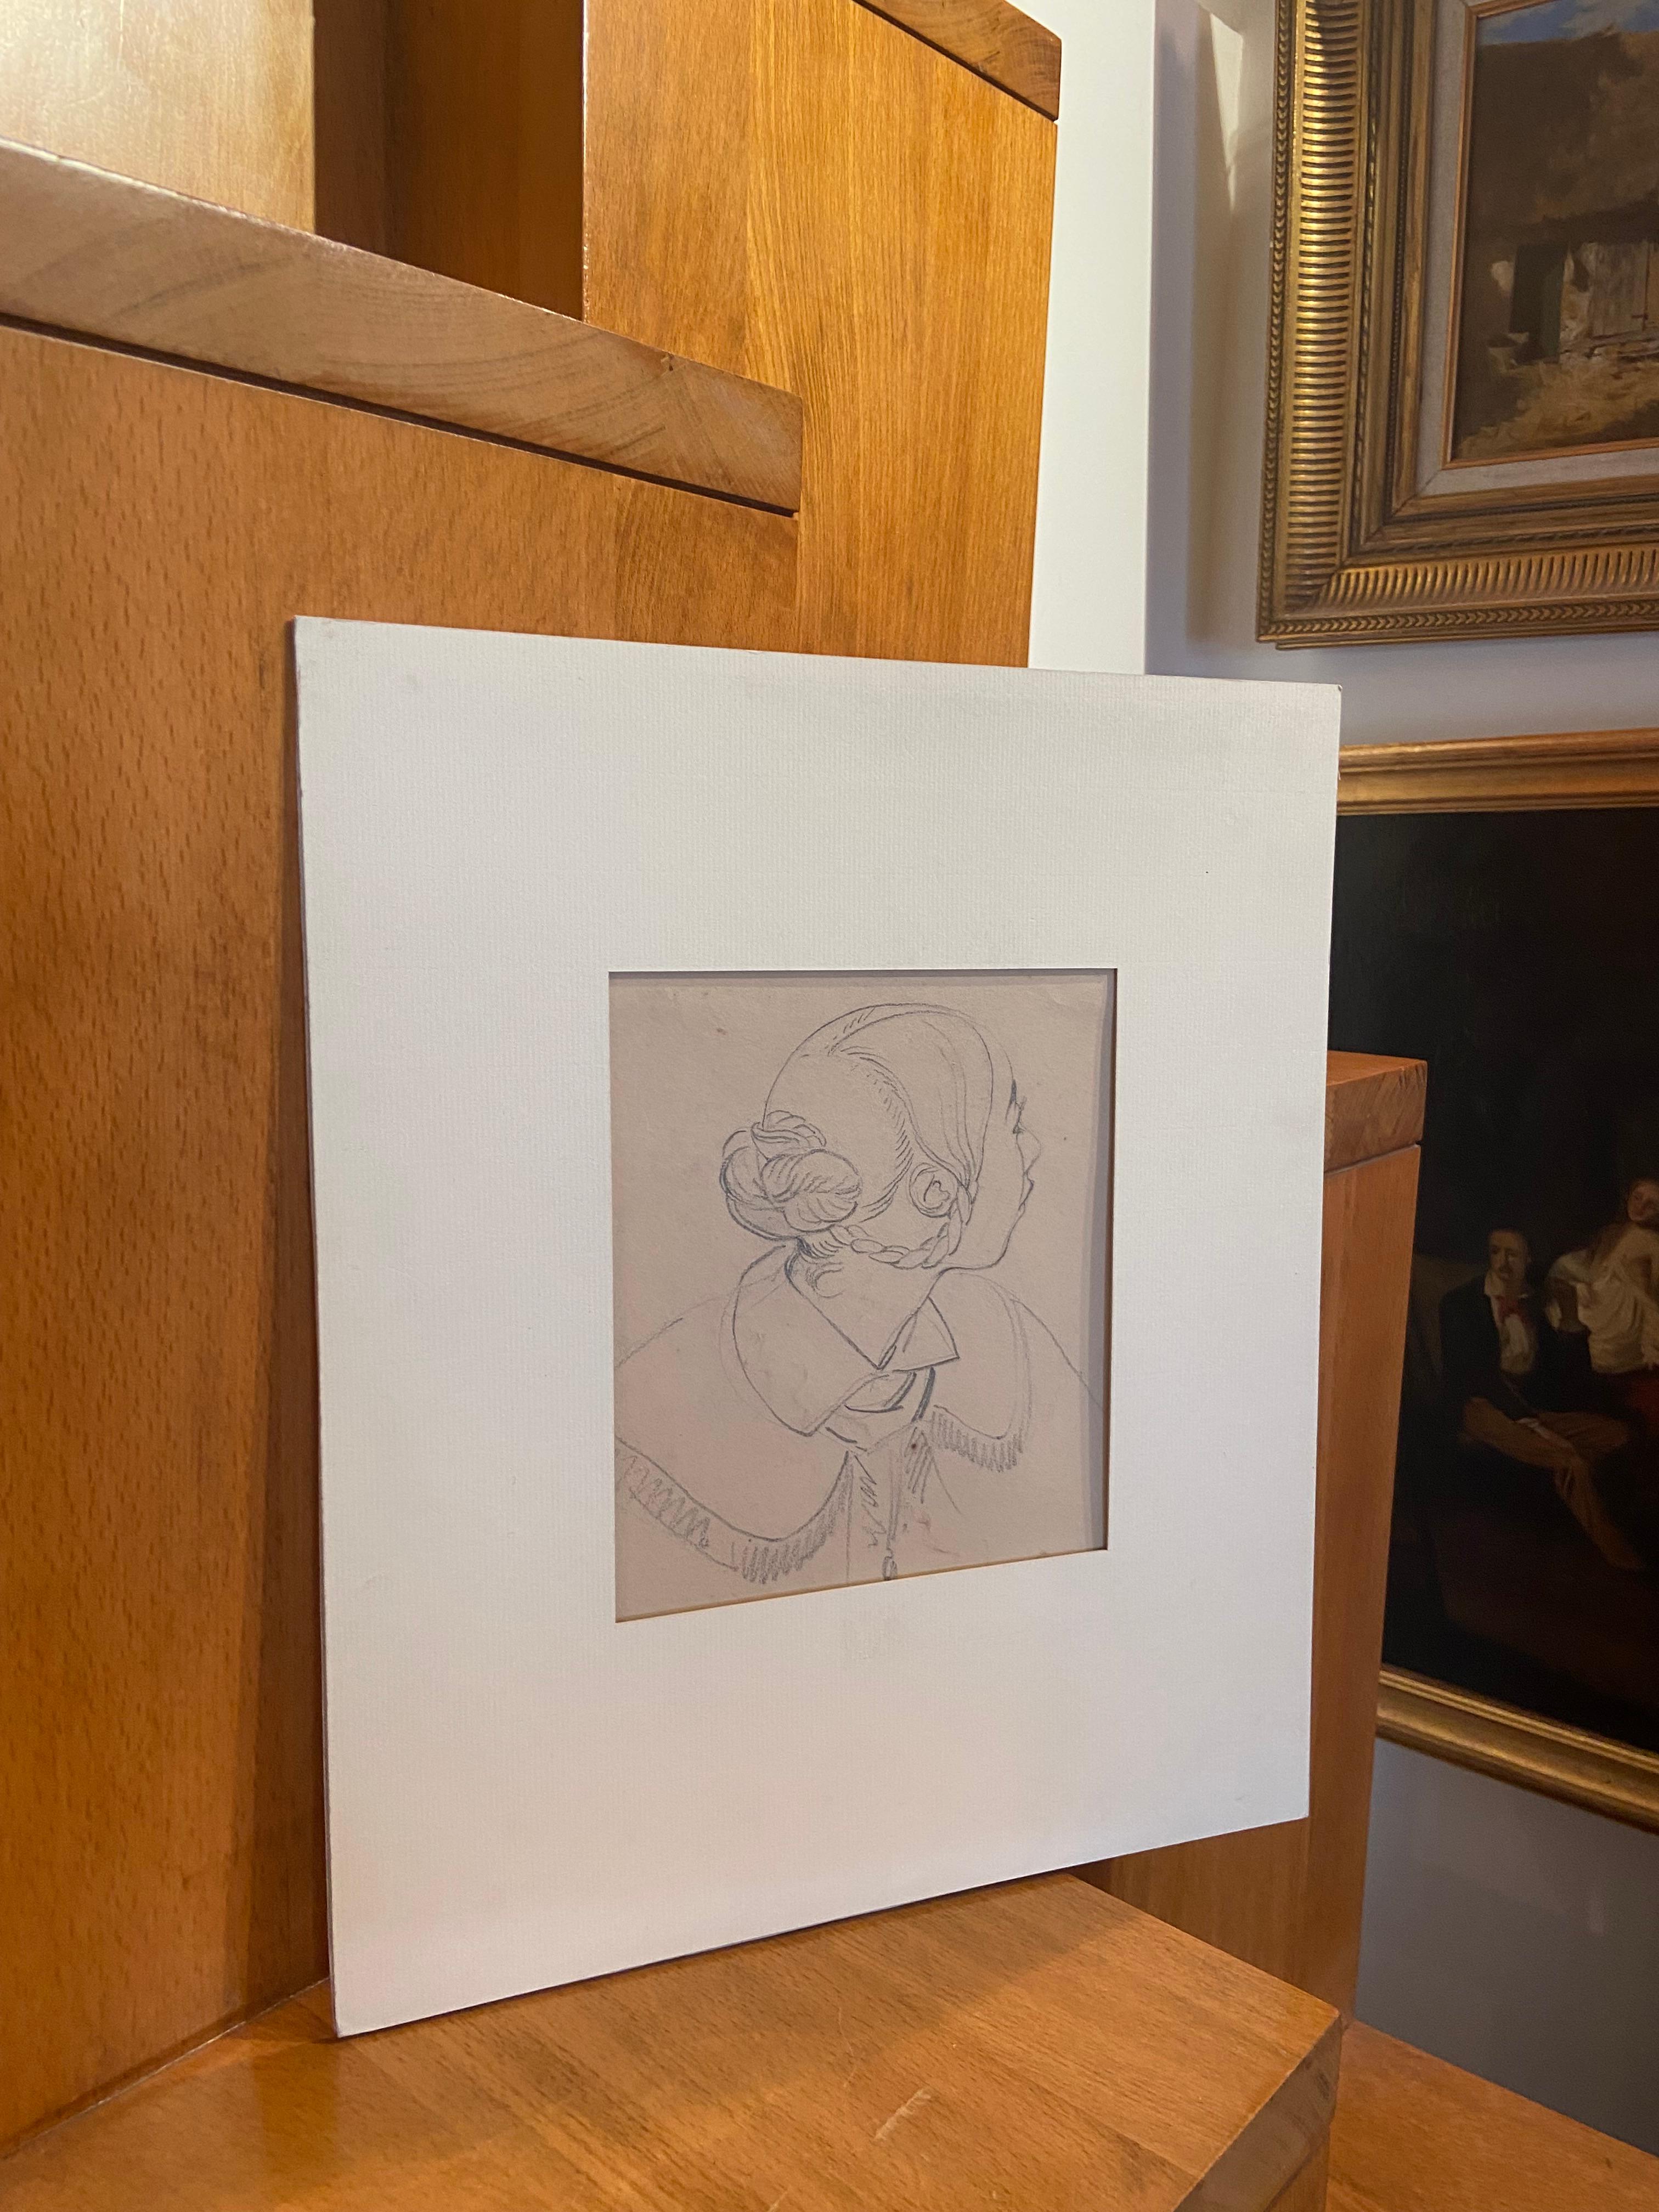 Eugène Devéria (1805-1865) 
Profil d'une jeune femme 
Crayon noir 
21 x 19 cm
Cachet de l'atelier au verso 
Provenance : Famille de l'artiste d'après une inscription au dos du support.
Non encadré
Dans une monture moderne 37 x 31 cm

 C'est un